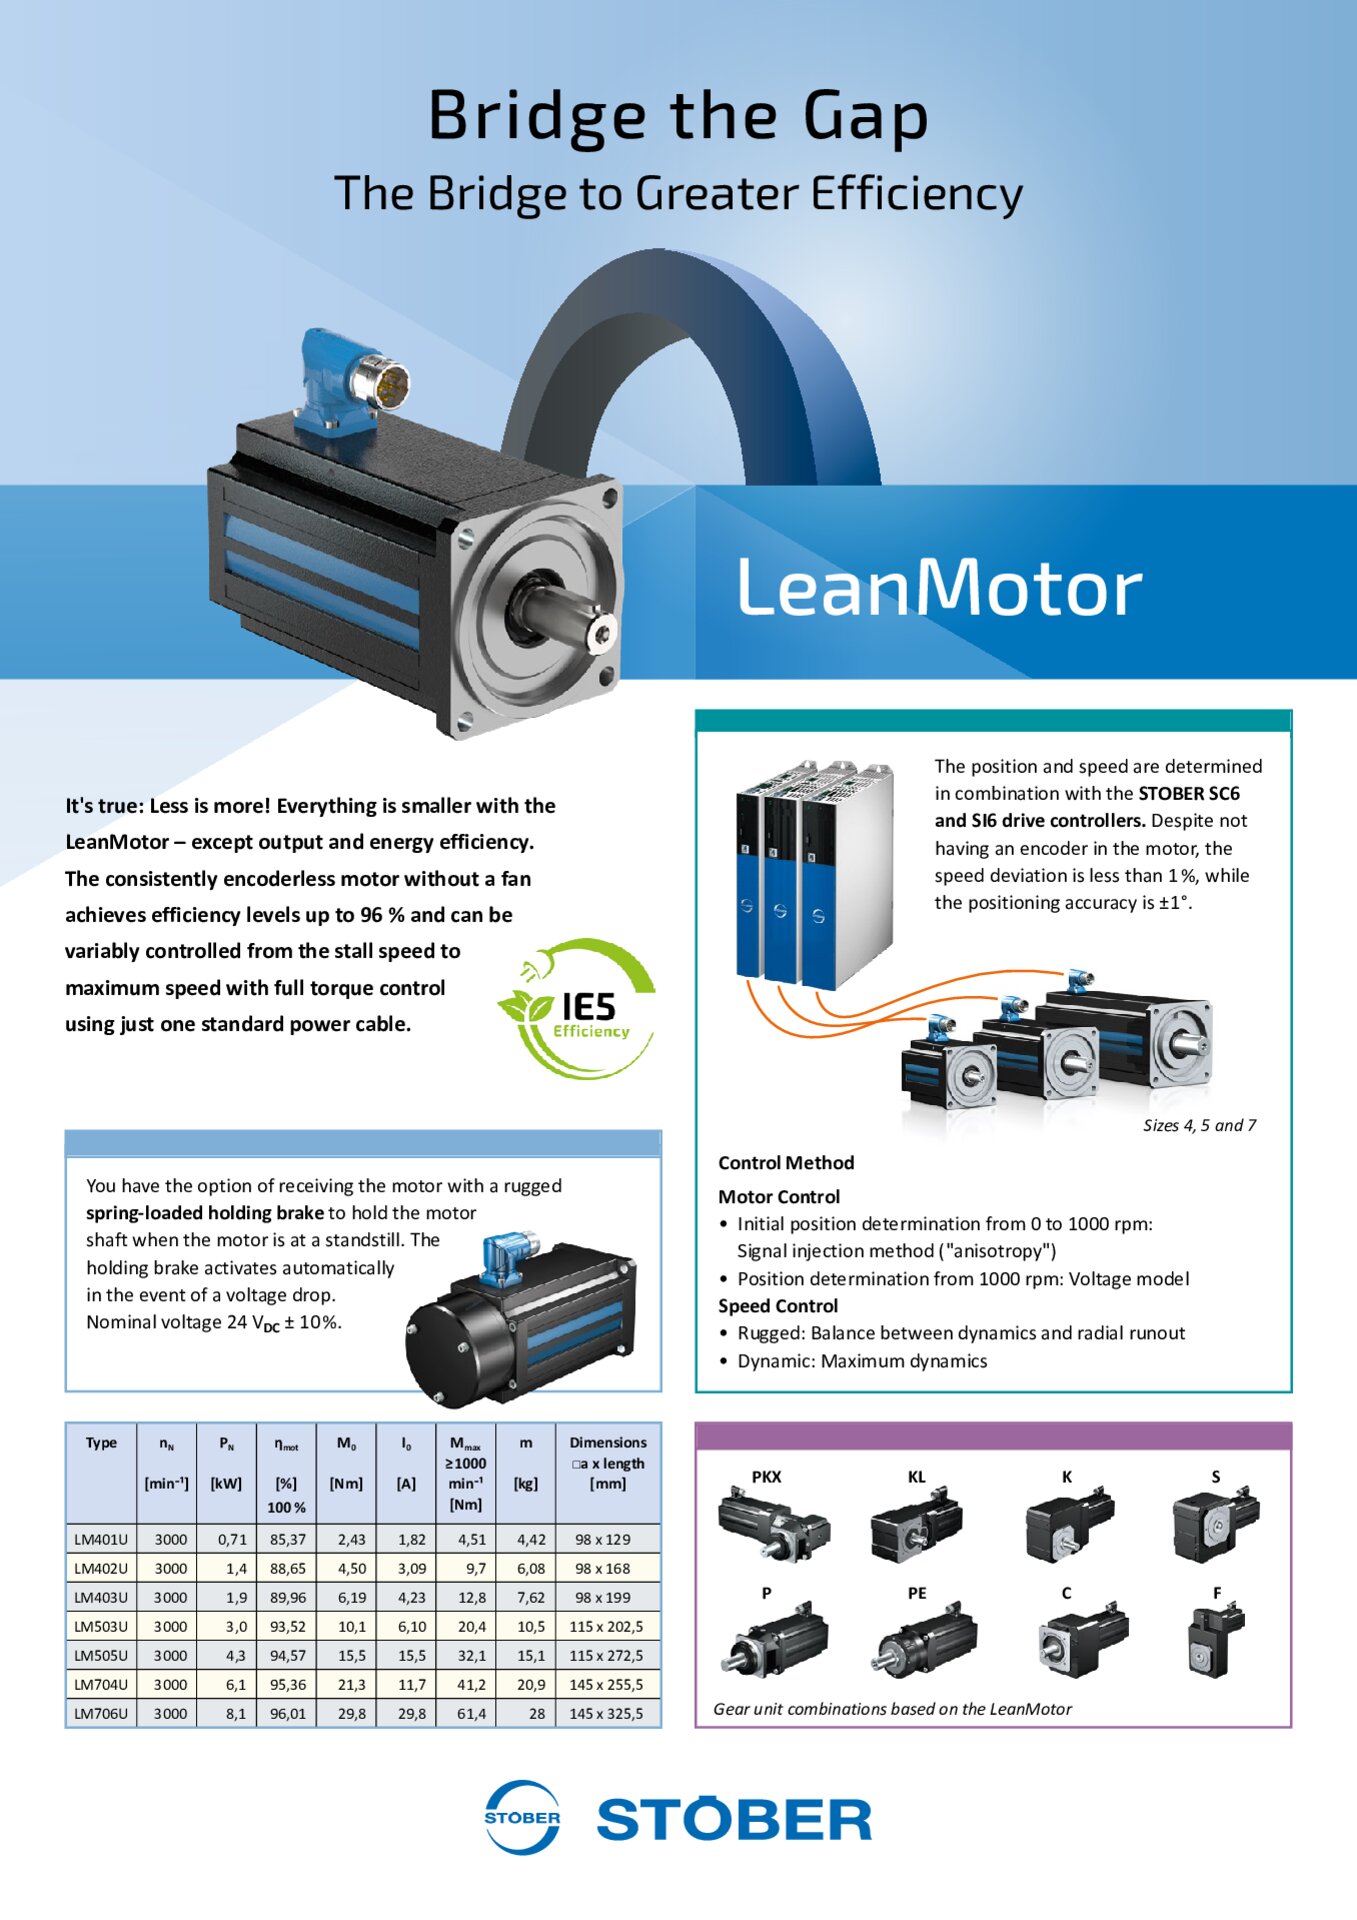 FY Lean-Motor